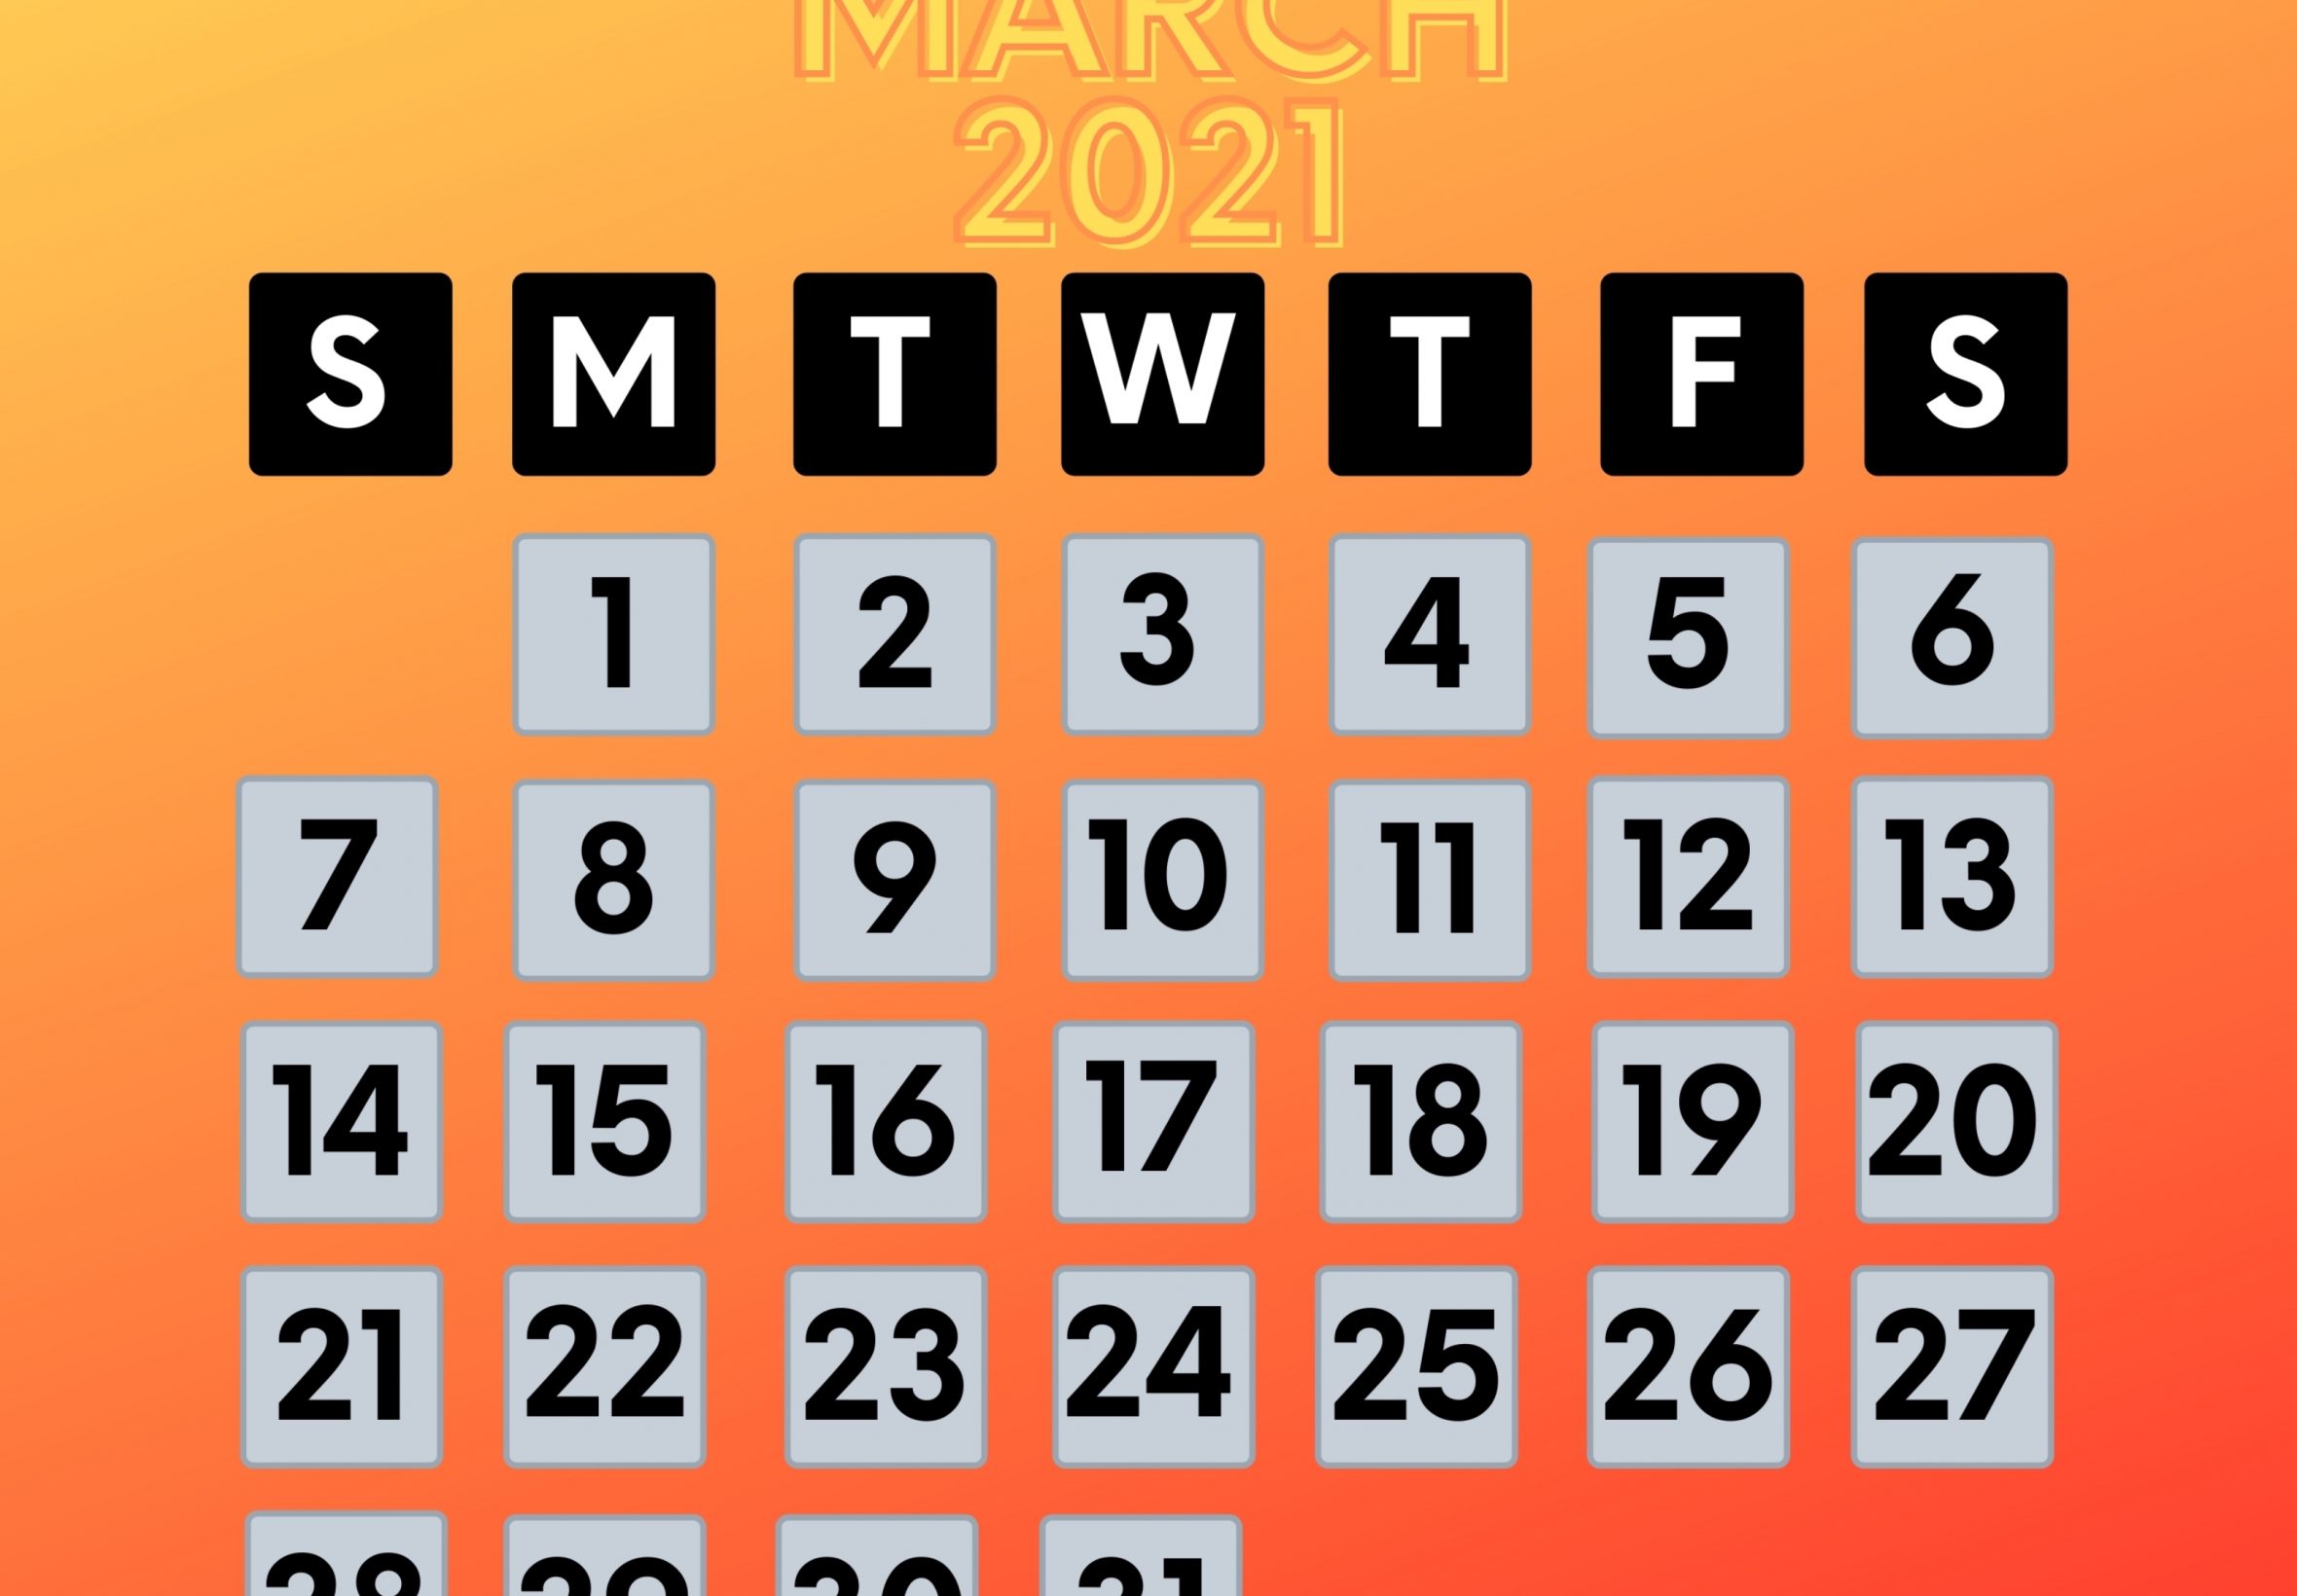 2360x1640 iPad Air wallpaper 4k March 2021 Calendar iPad Wallpaper 2360x1640 pixels resolution